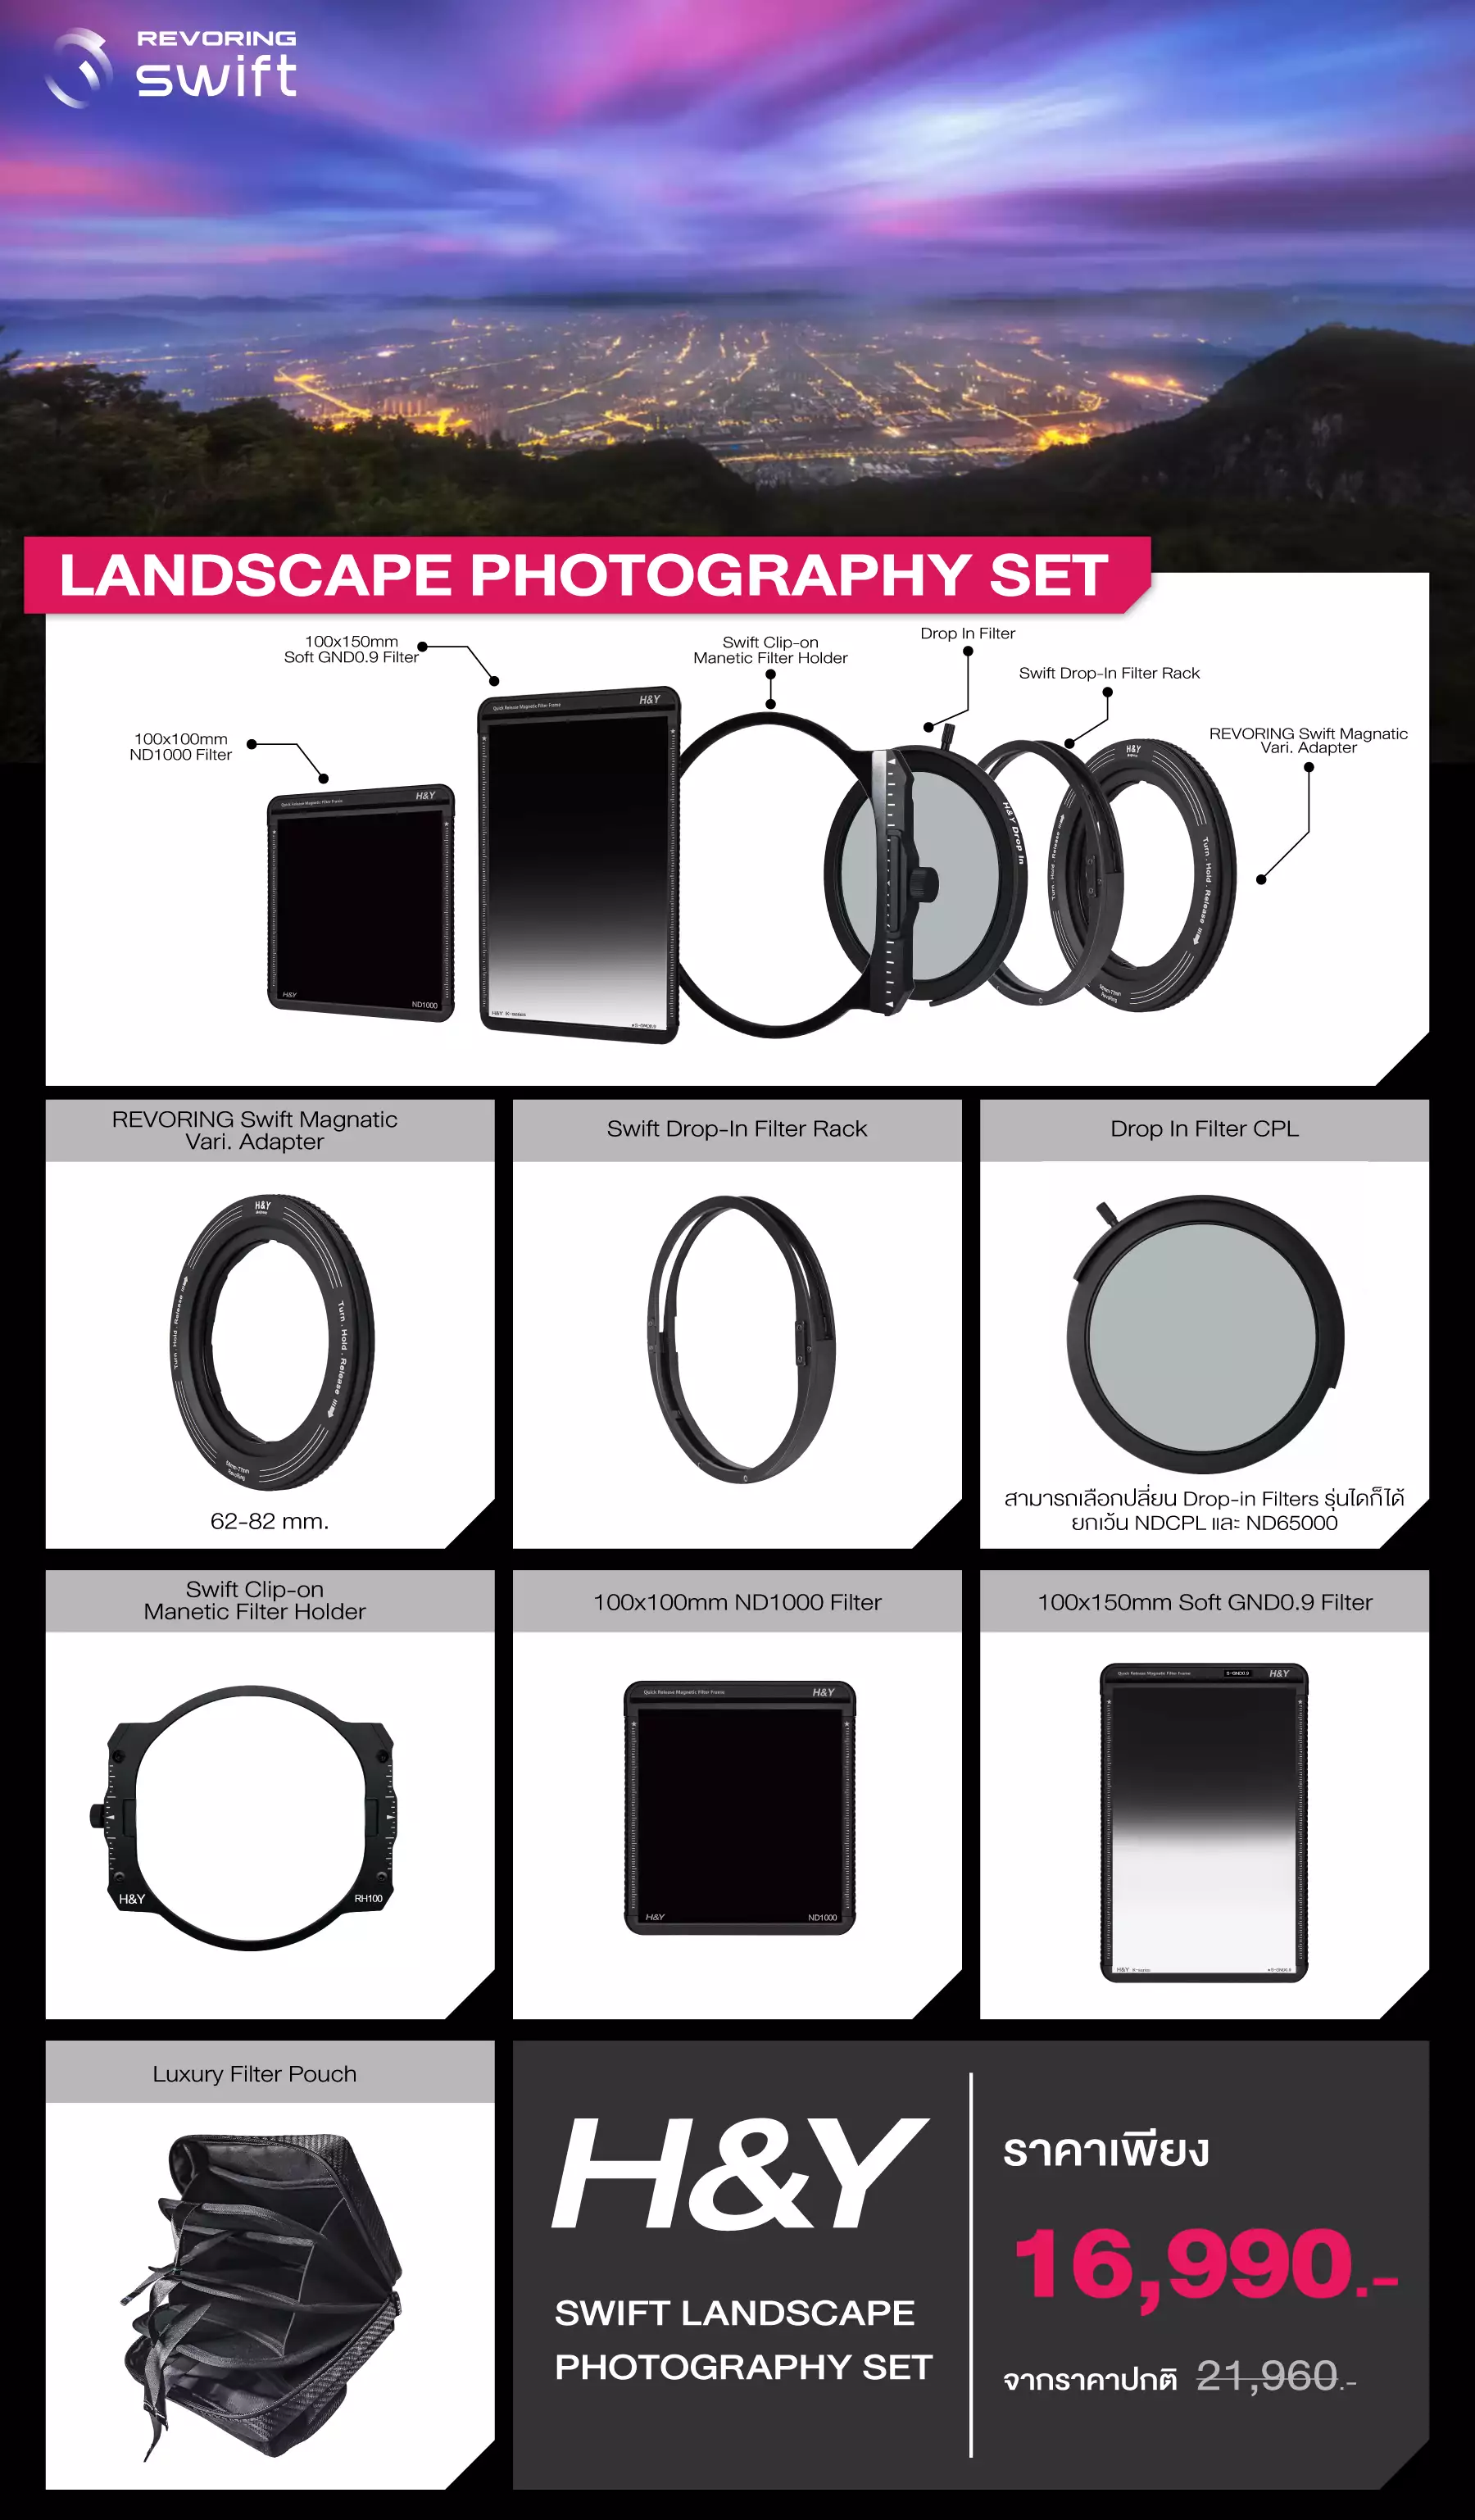 H&Y Swift Landscape Photography Set Filter